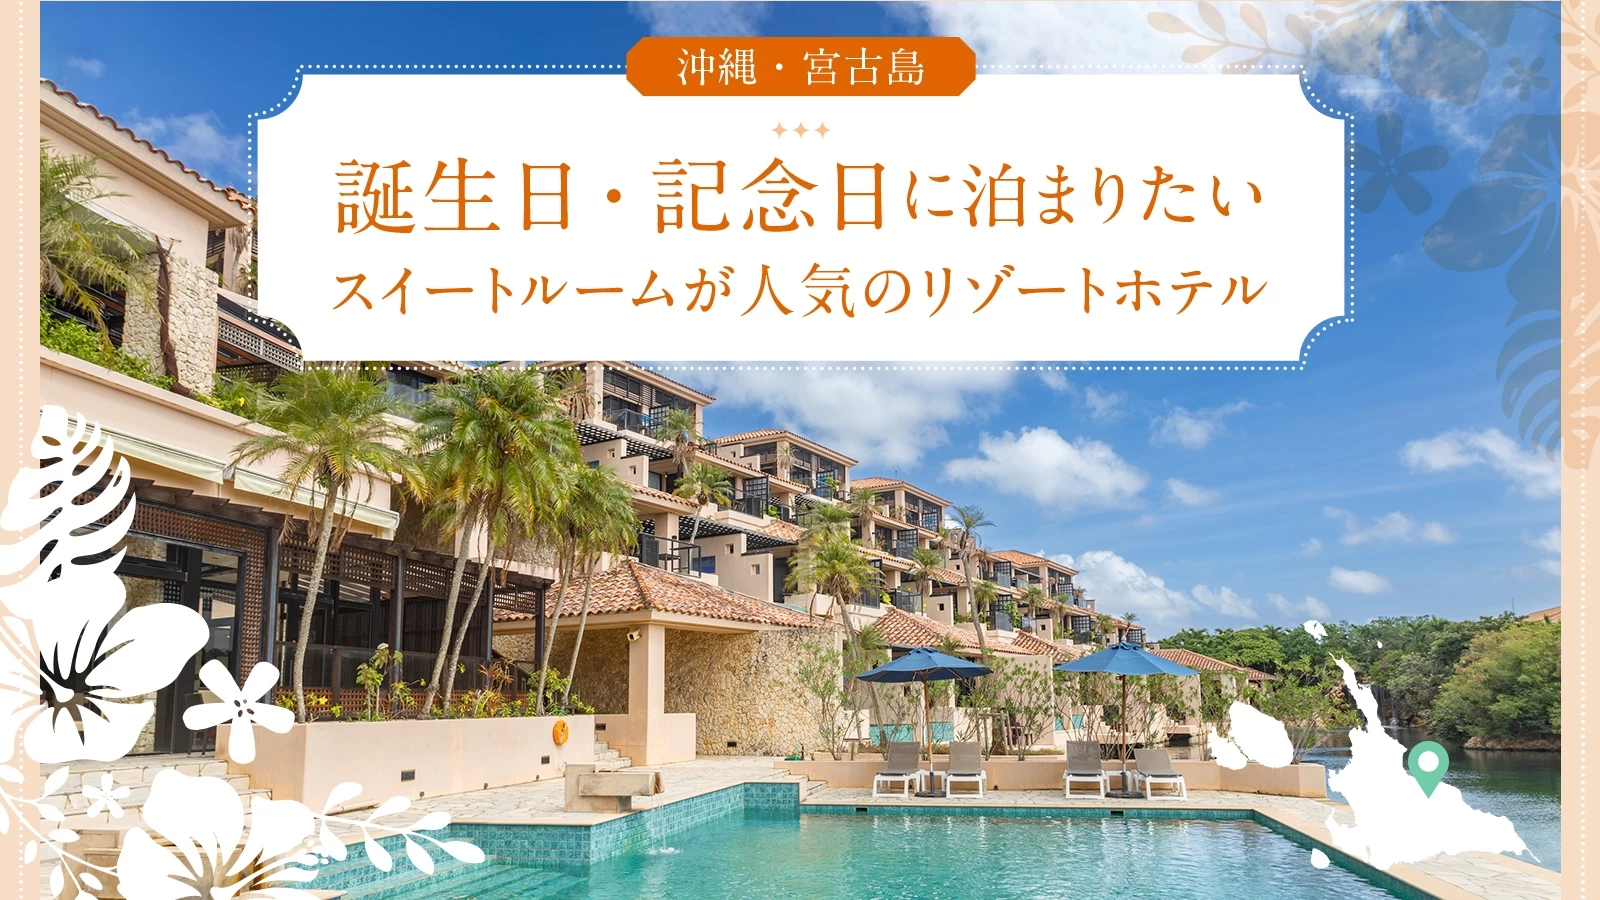 【沖縄・宮古島】誕生日・記念日に泊まりたいスイートルームが人気のリゾートホテル5選